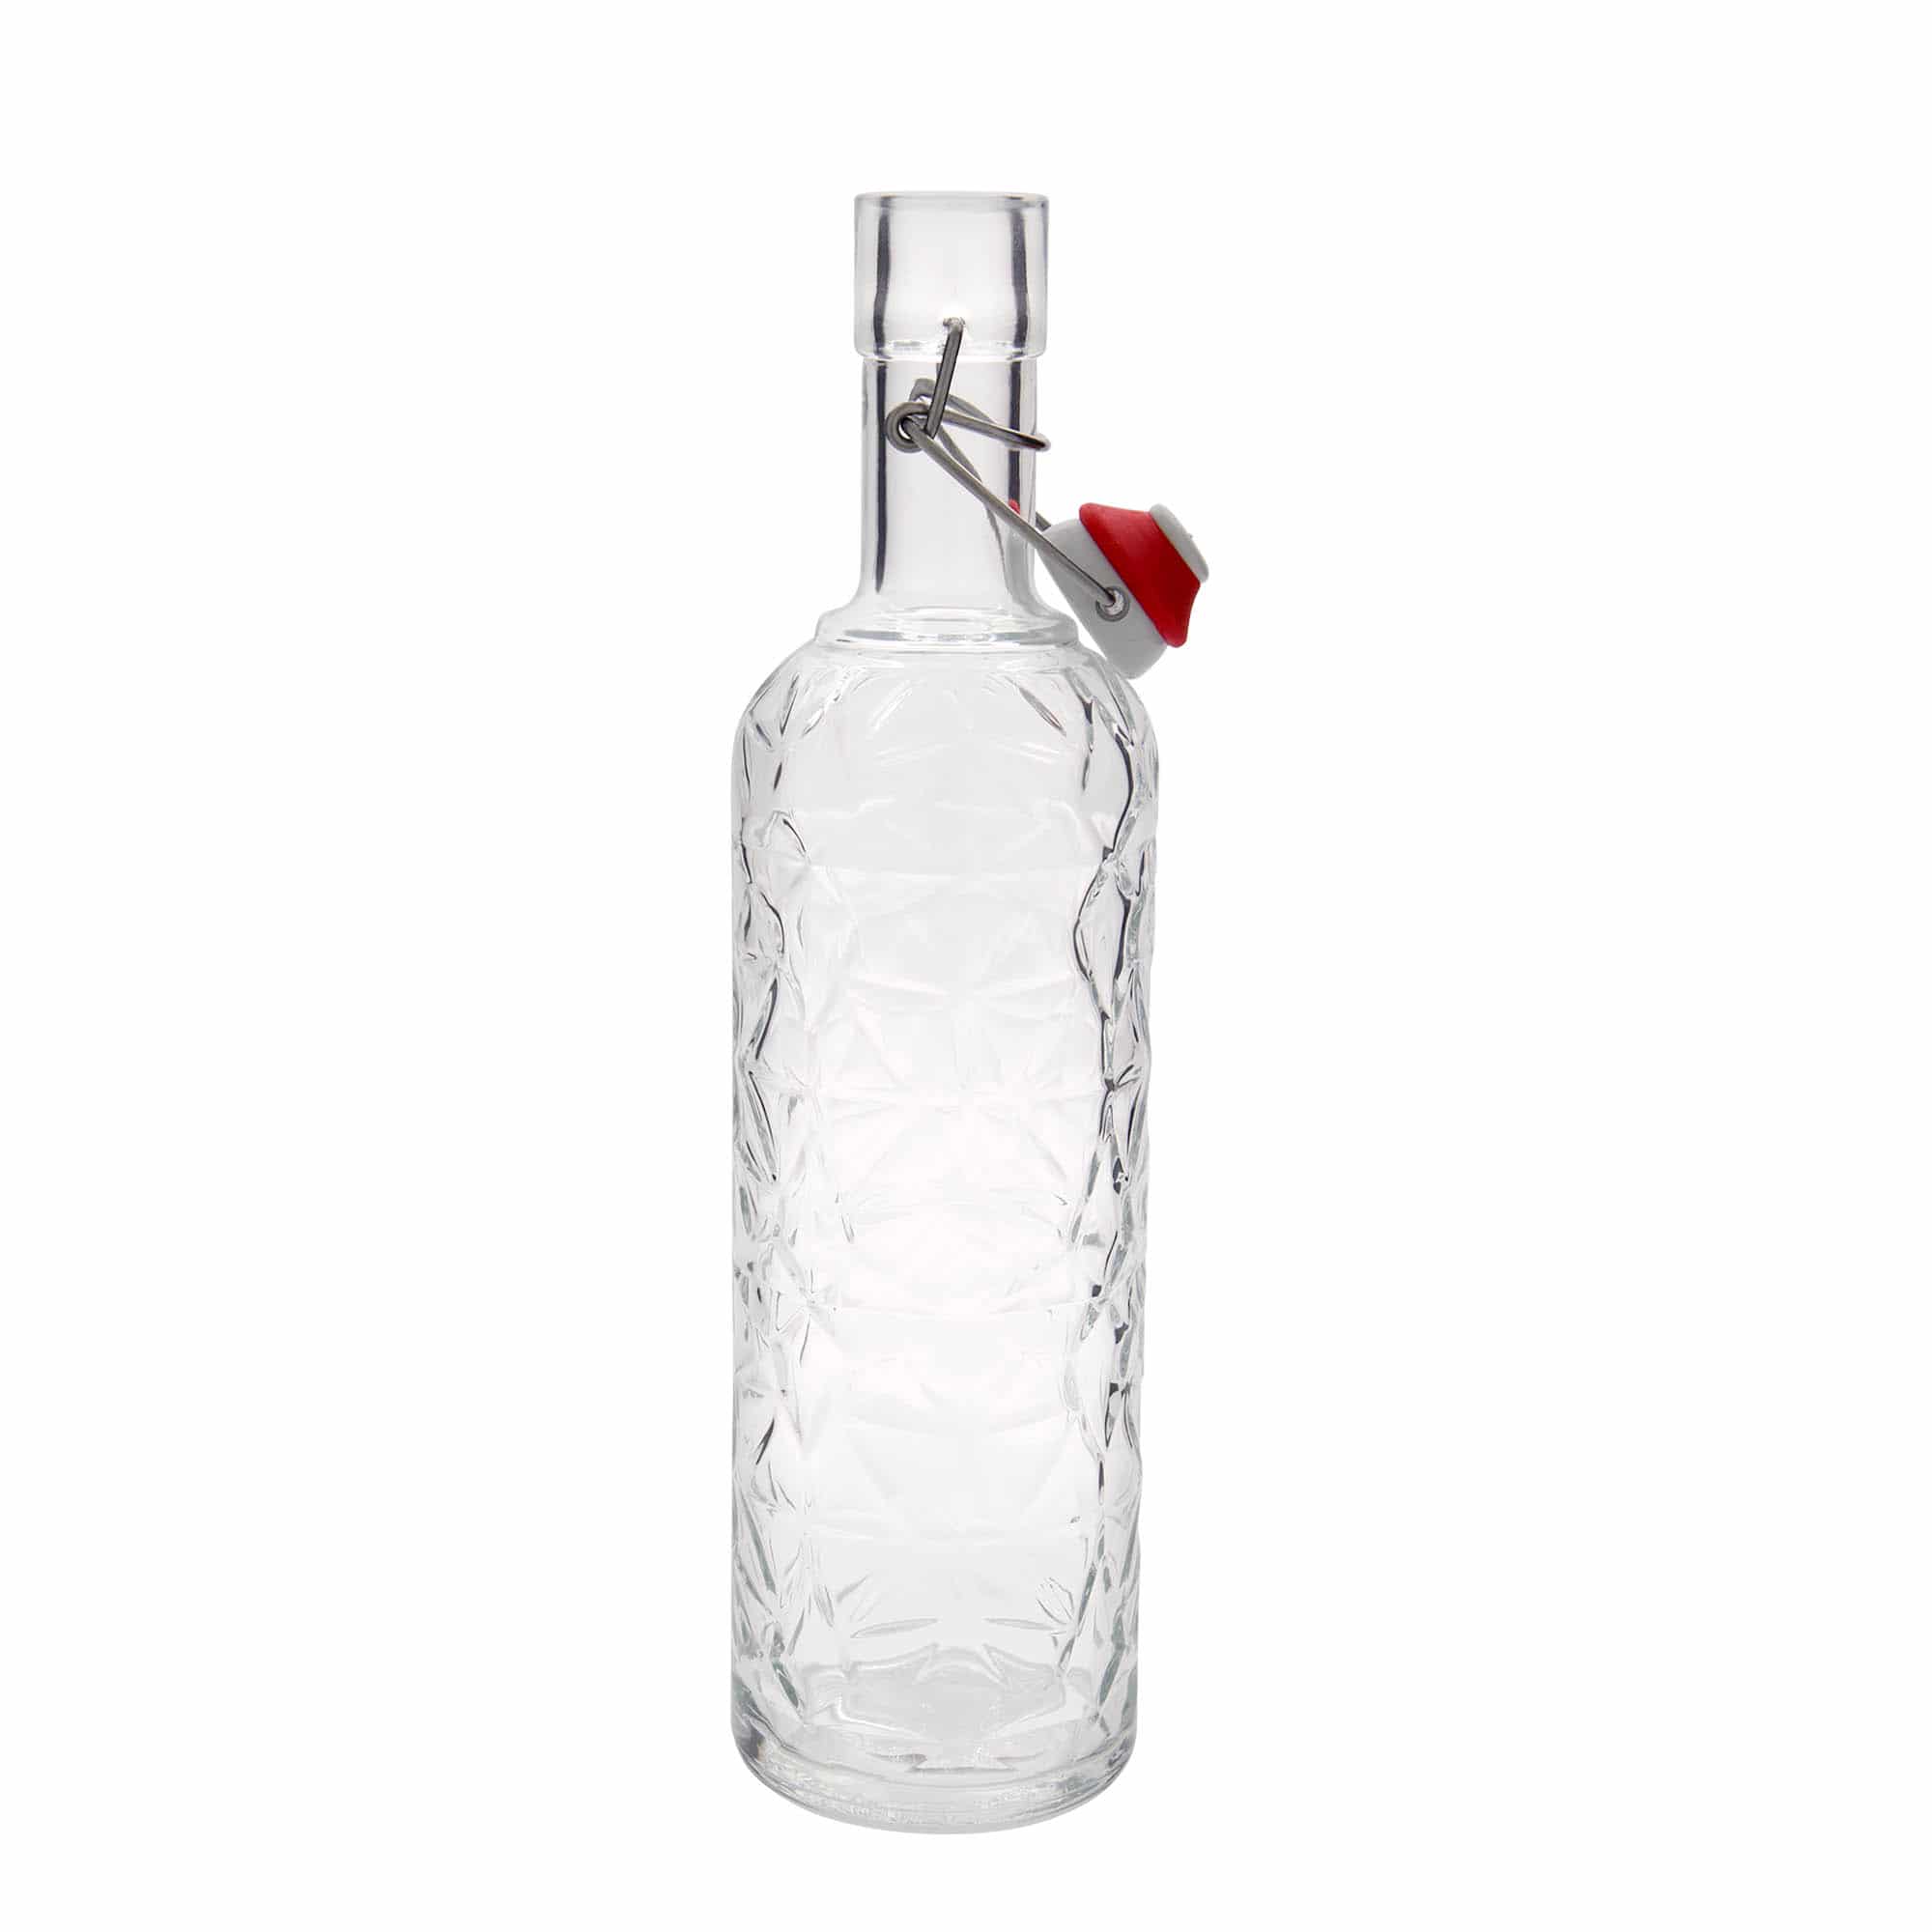 1,000 ml glass bottle 'Oriente', closure: swing top